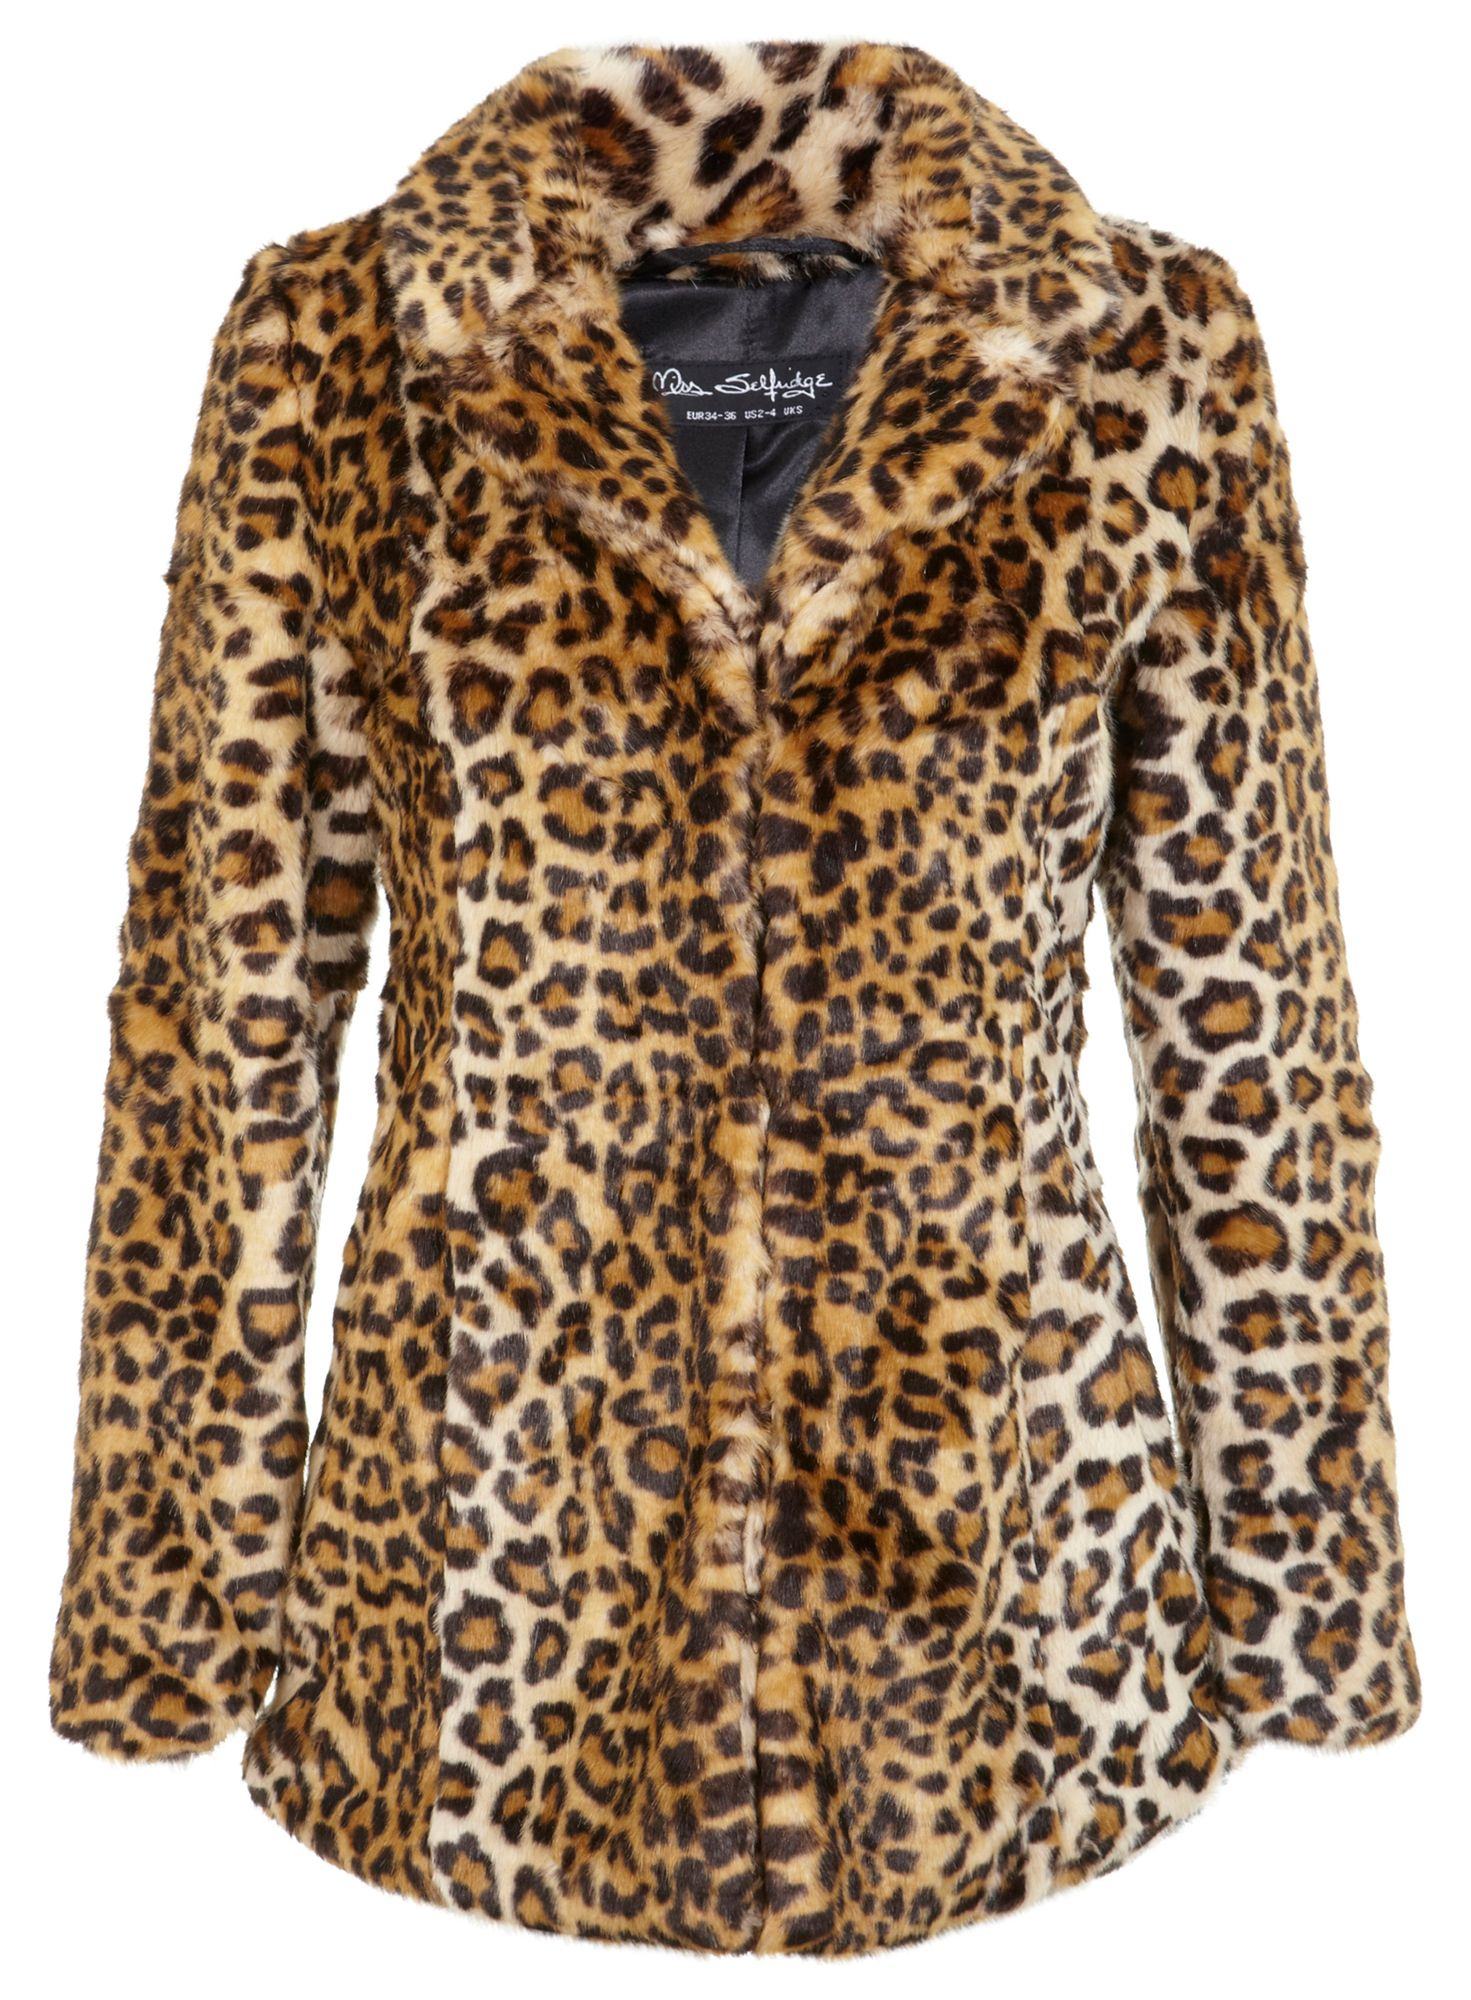 Miss selfridge Faux Fur Leopard Print Coat in Multicolor | Lyst